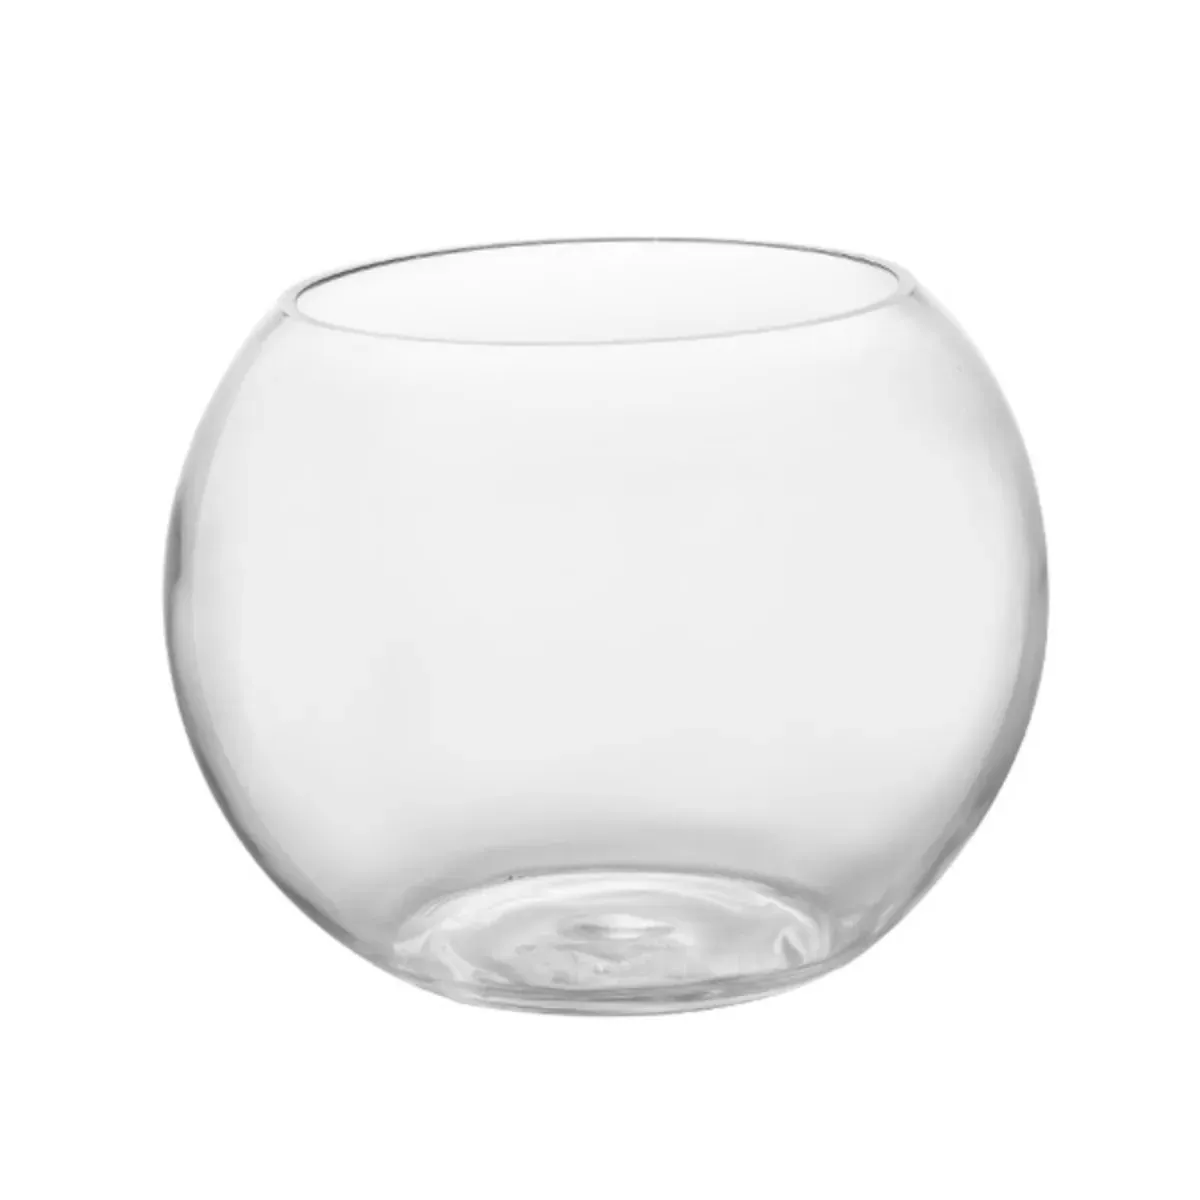 Einfaches transparentes kugelförmiges Glas Goldfisch-Aqua-Bauhaus dekoratives wassergetreue Glasblumenarrangement hydroponische Vase